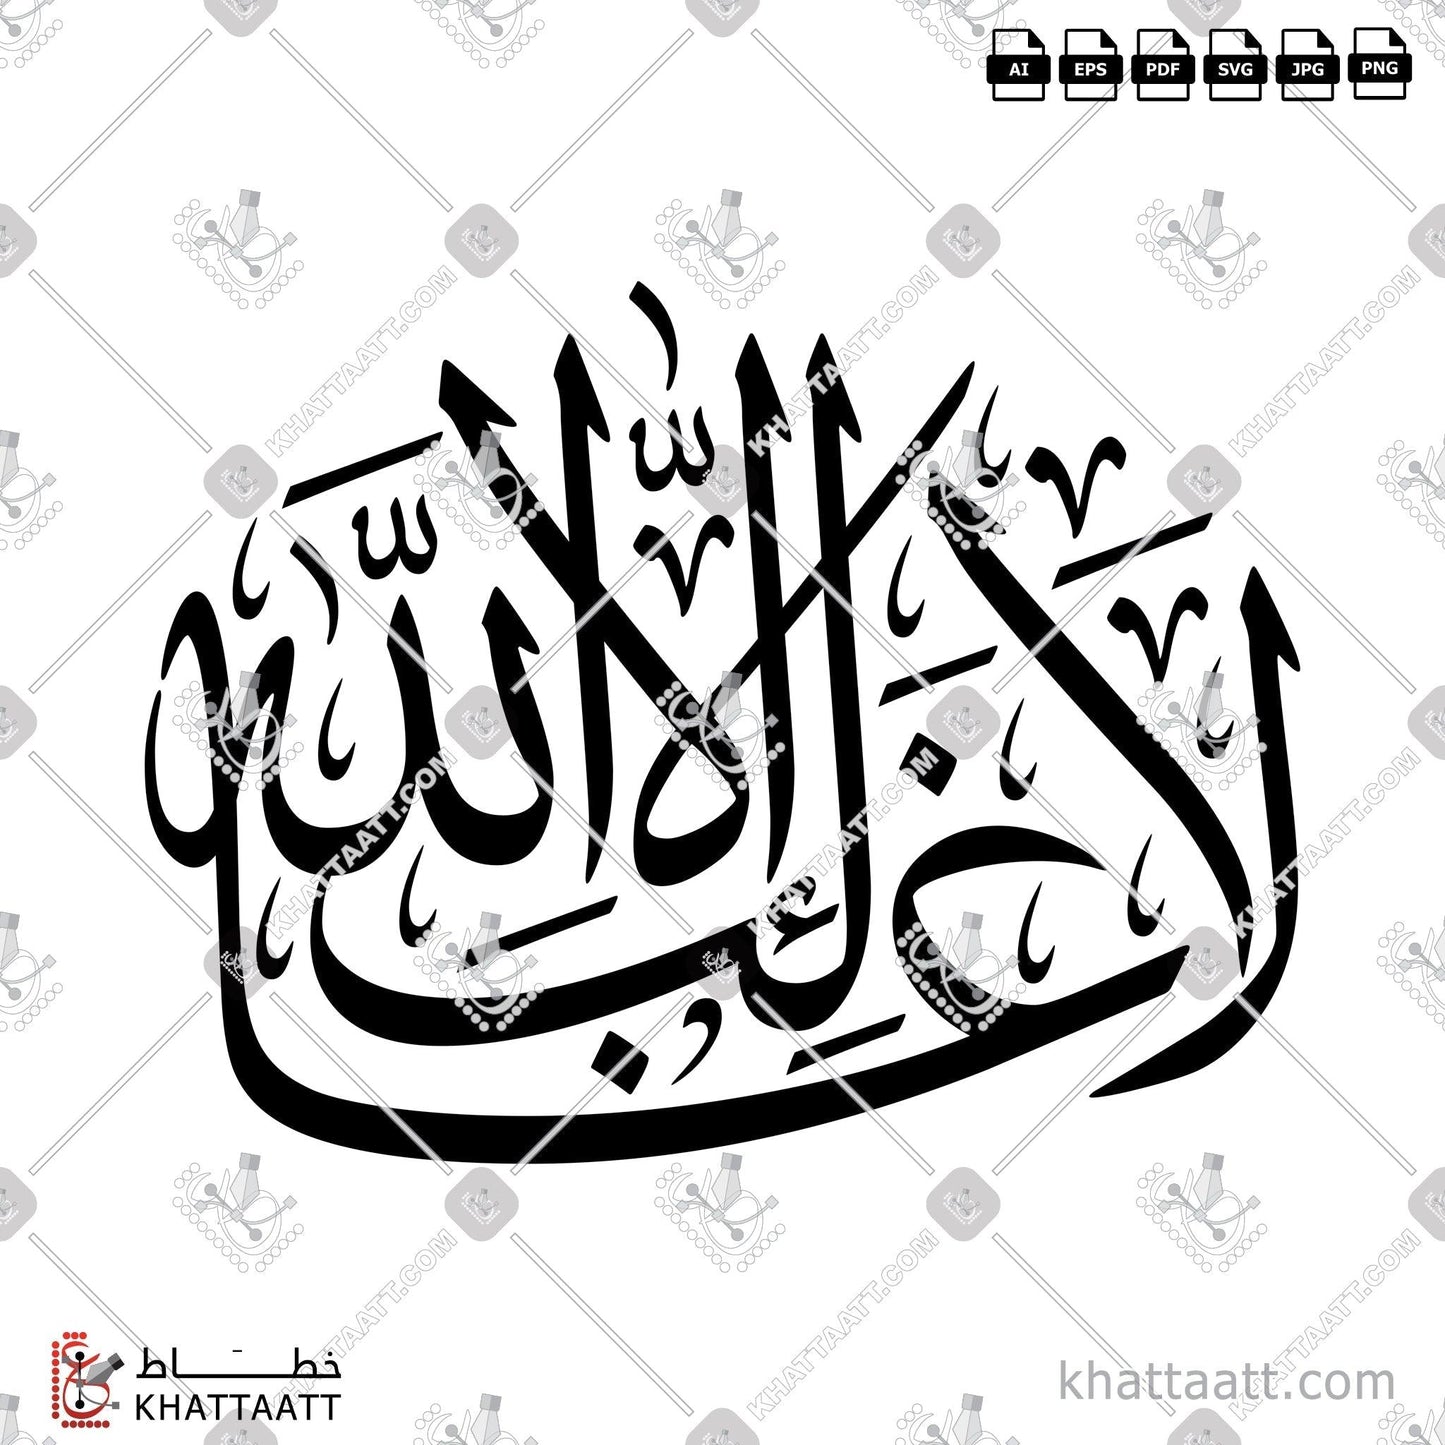 Allah, Arabic Calligraphy Vector, Symmetrical Design, Thuluth Script, الخط العربي, الله, الله جل جلاله, الله عز وجل, خط الثلث, لا غالب إلا الله KHATTAATT